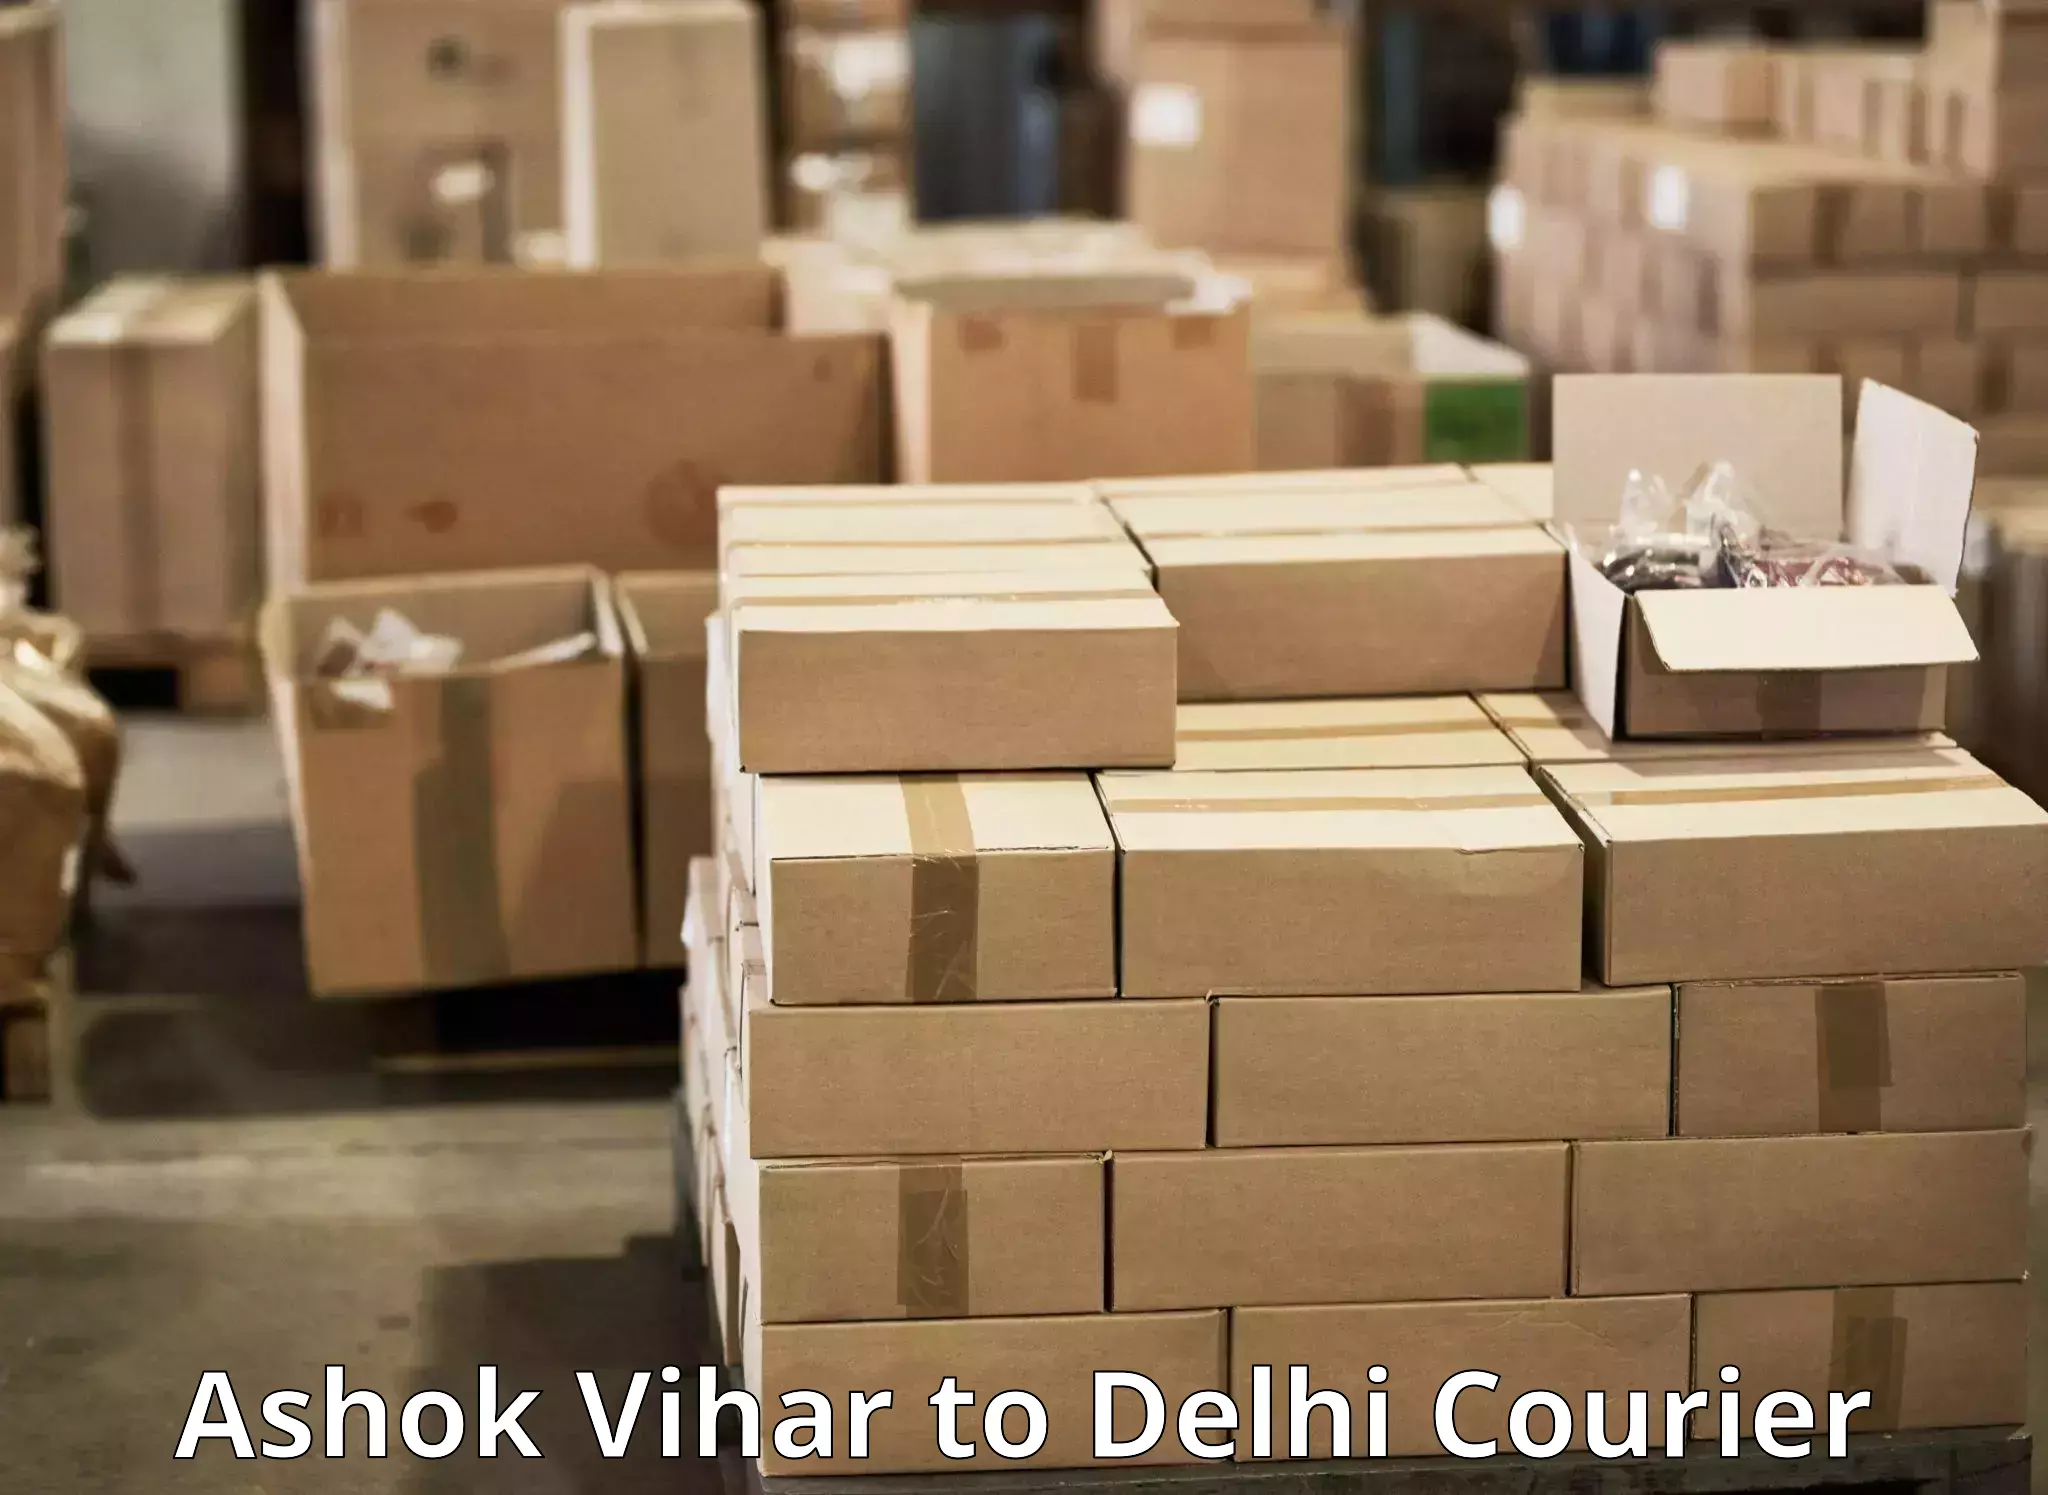 International courier networks Ashok Vihar to Delhi